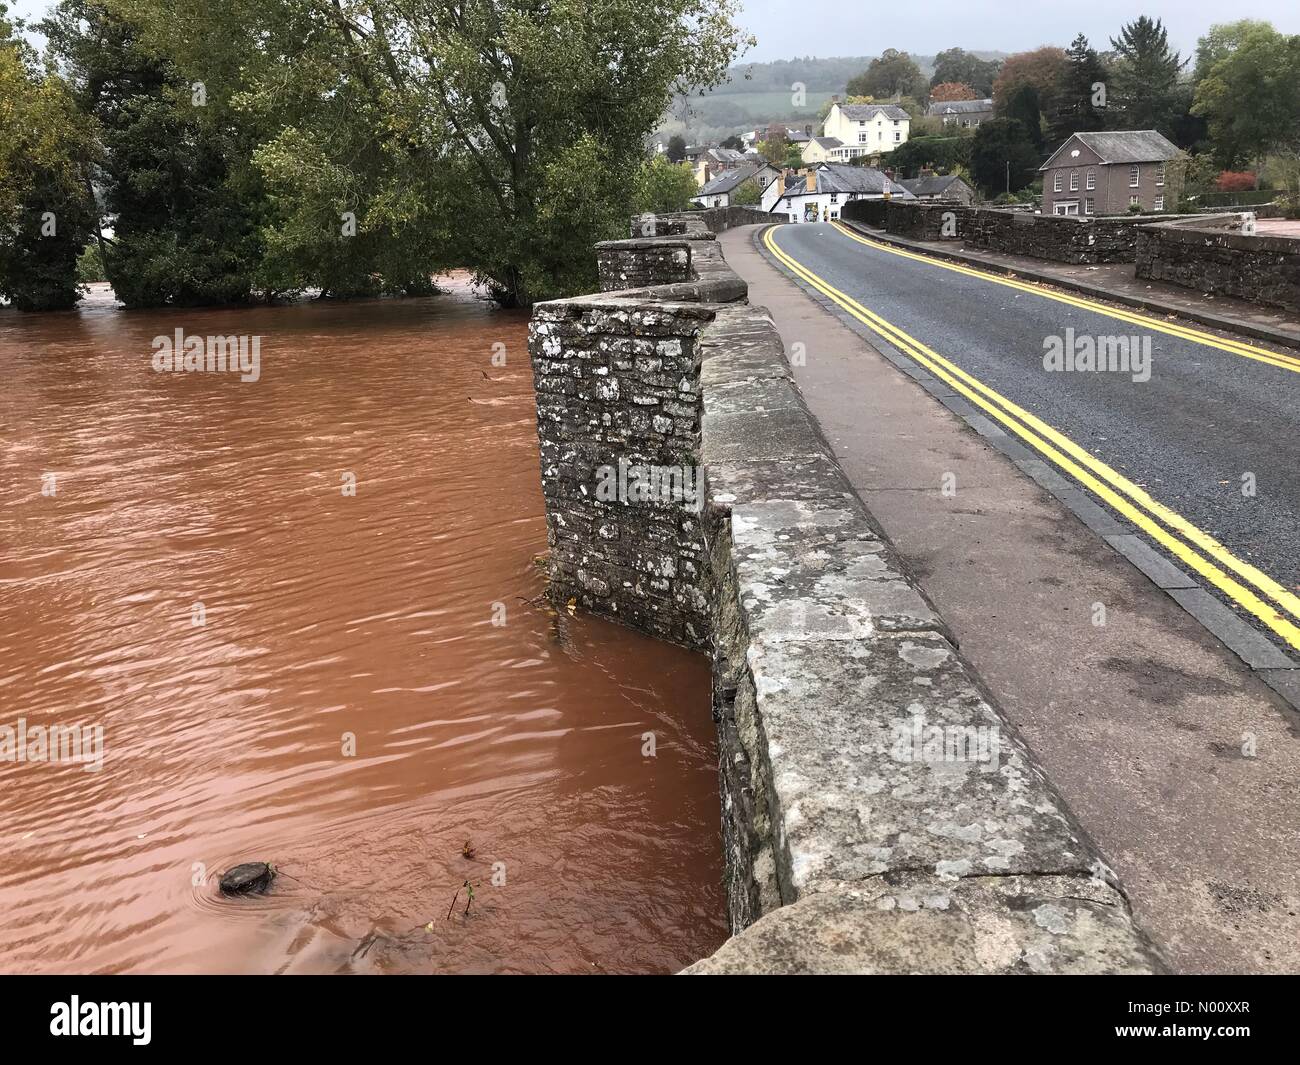 Regno Unito - Previsioni del tempo - Le inondazioni a Crickhowell Galles - Sabato 13 Ottobre 2018 - polizia vicino al ponte sul fiume Usk dopo piogge torrenziali e le inondazioni in Galles. Foto Stock